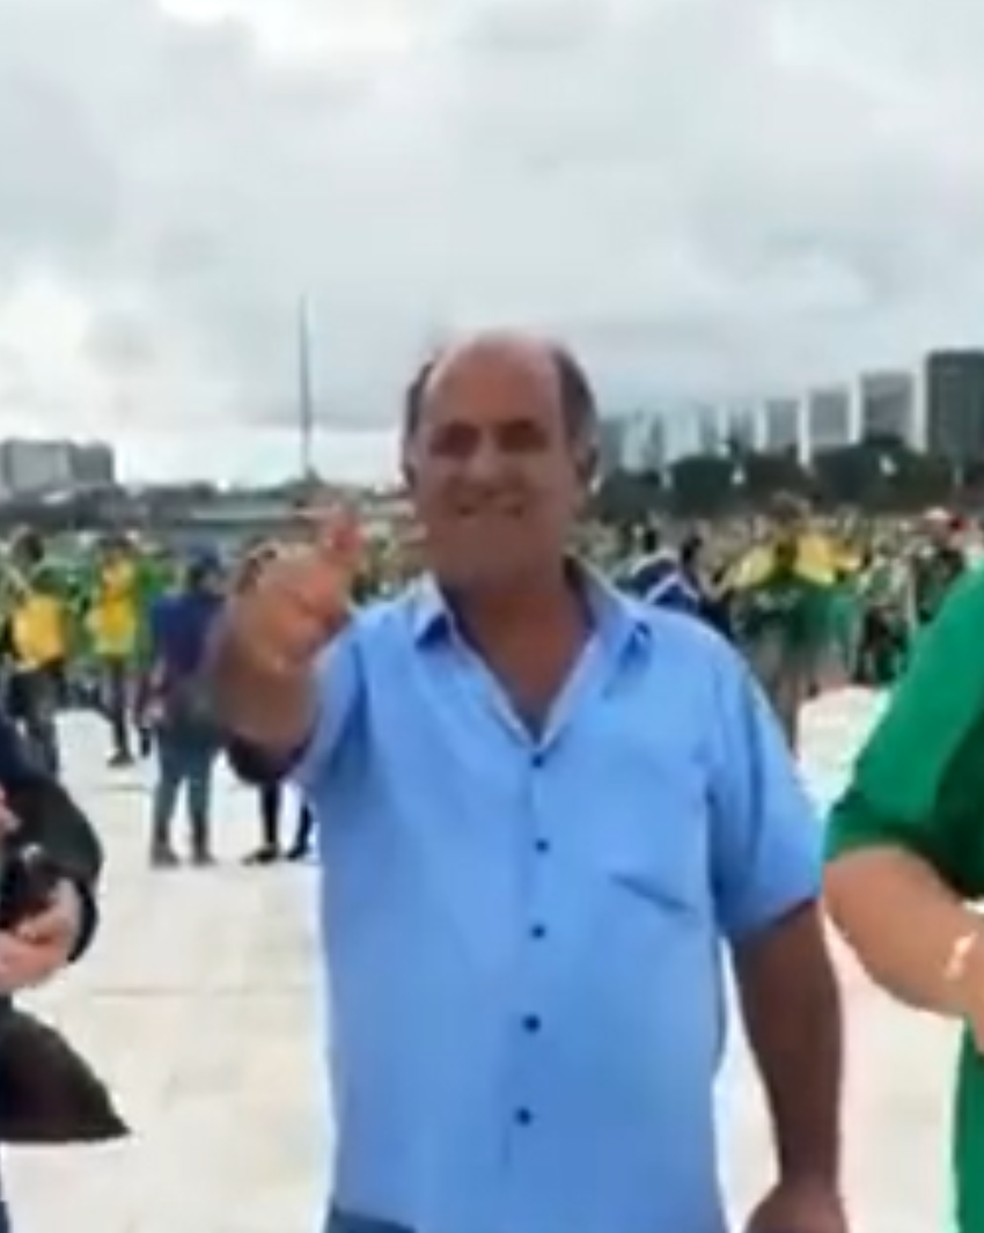 Vereador da cidade de Inhumas (GO) também estava na invasão em Brasília — Foto: Reprodução/Redes Sociais